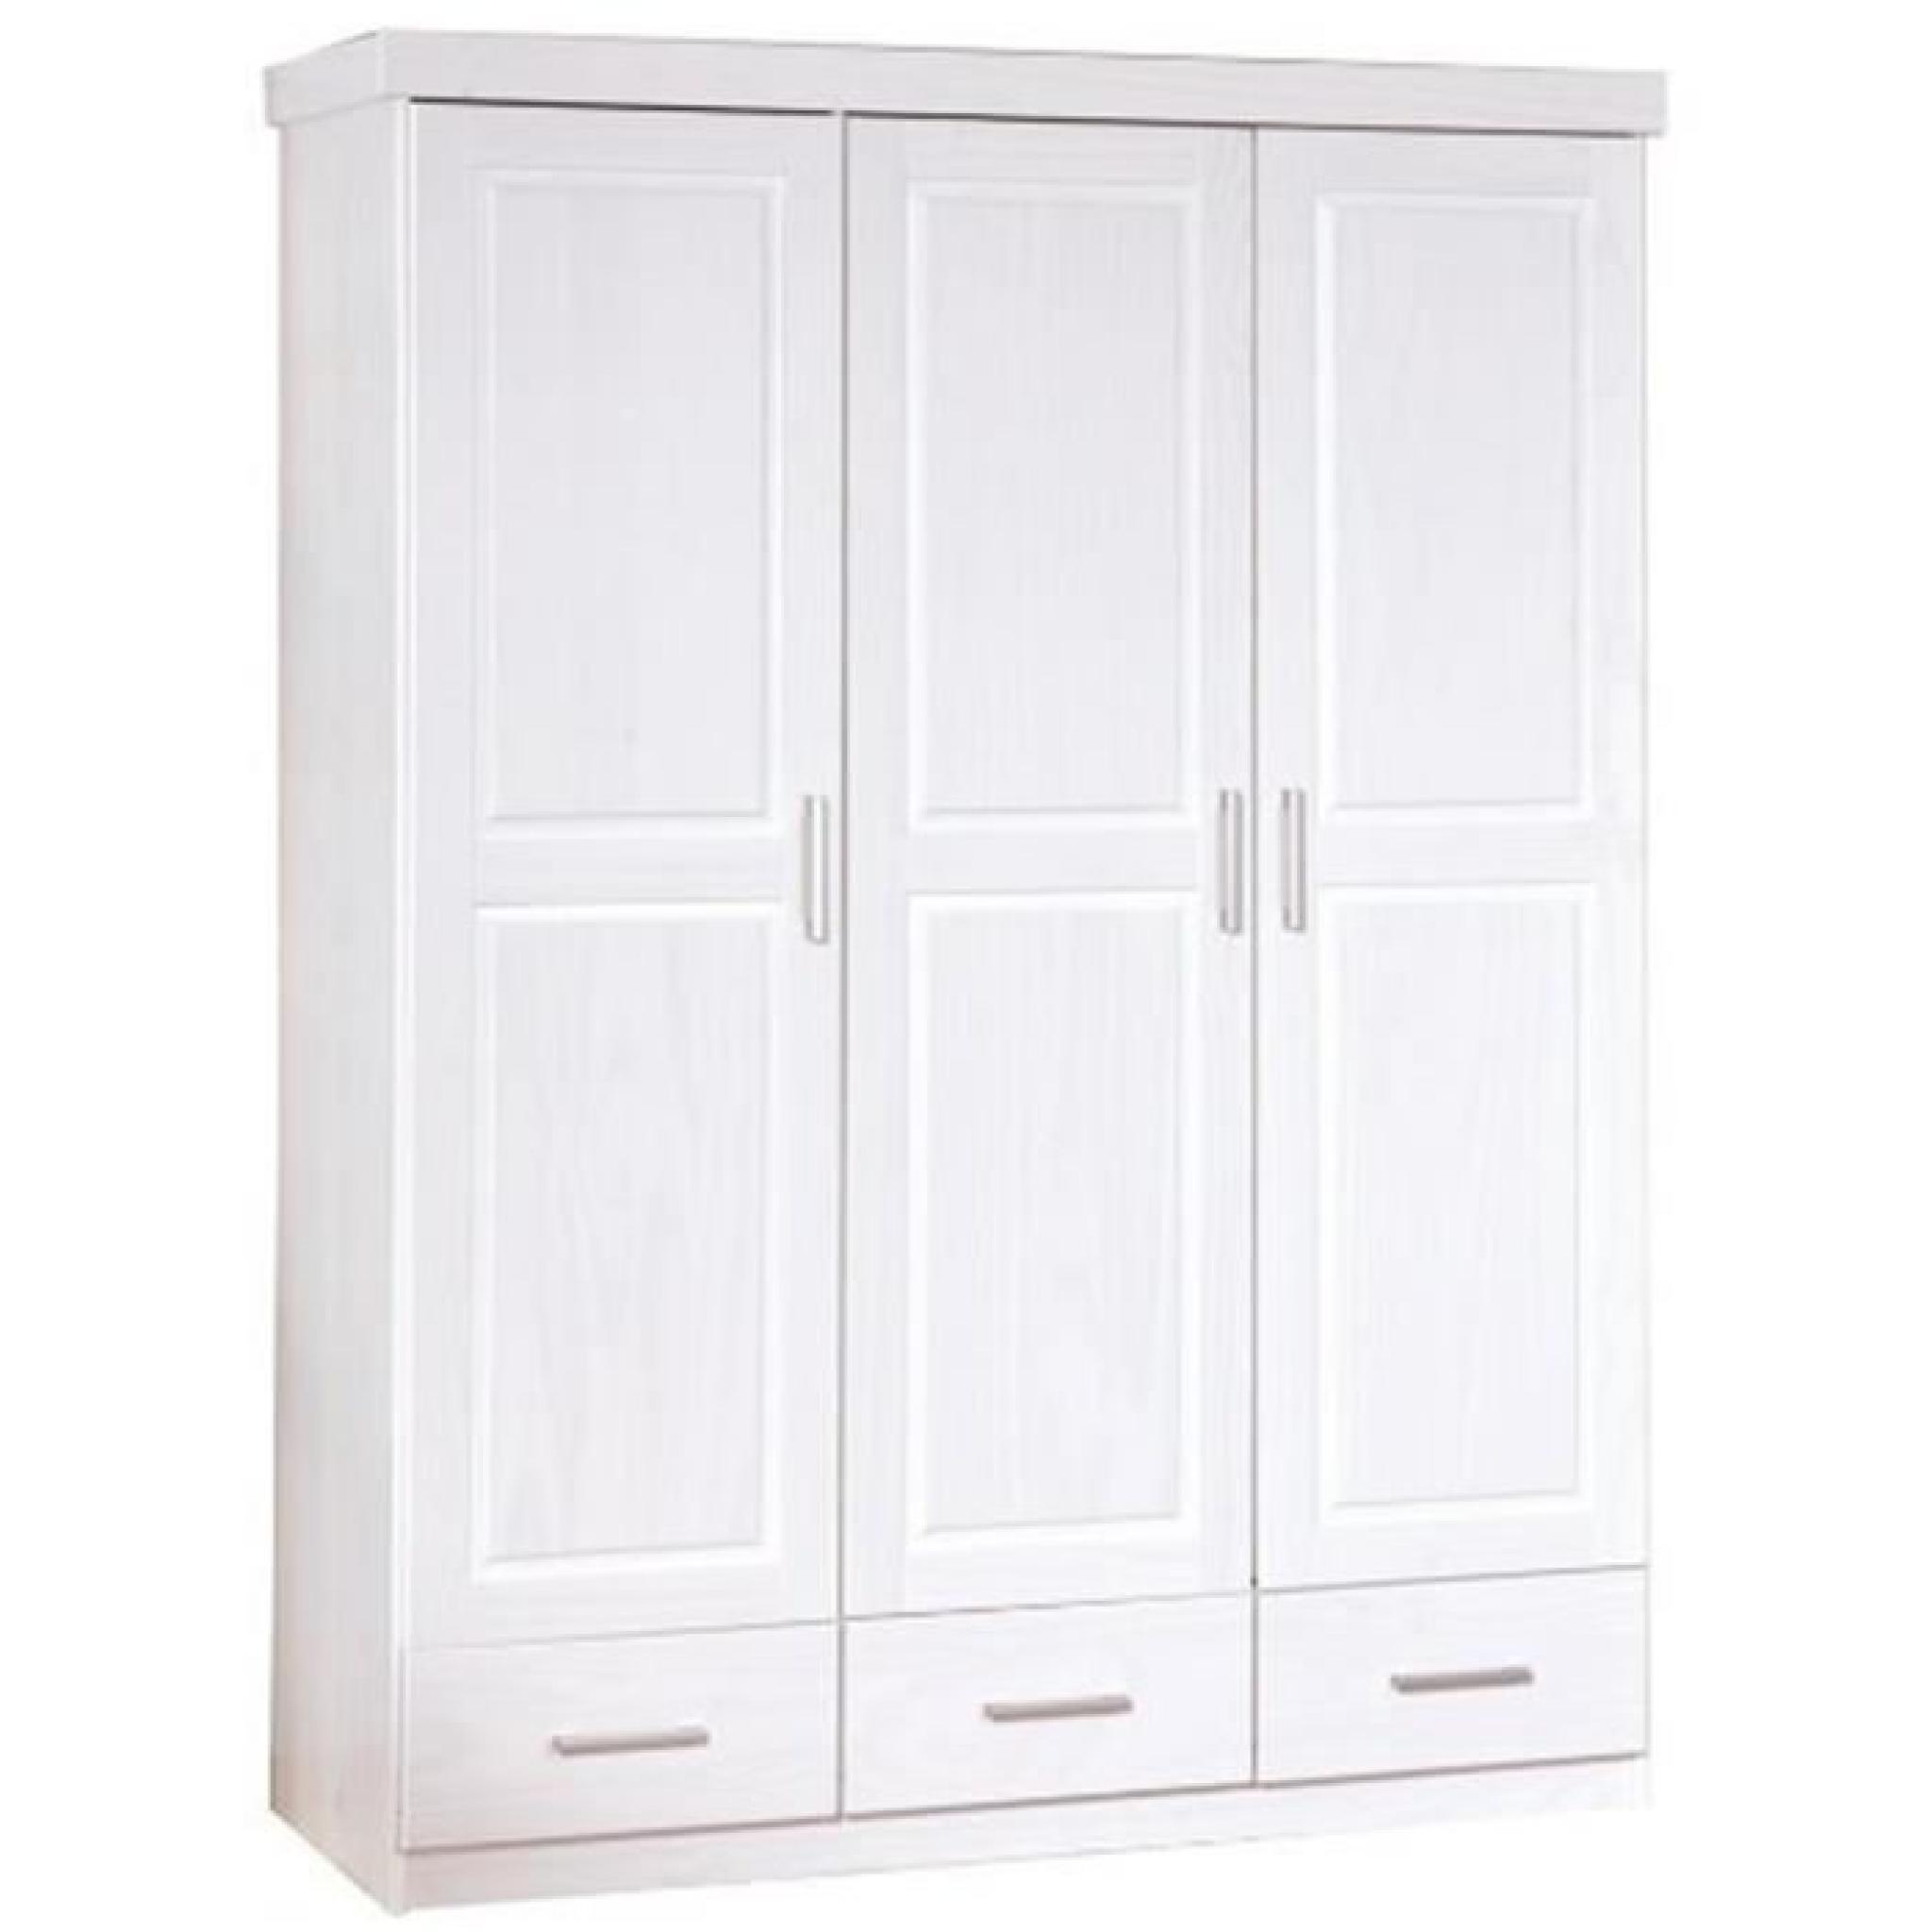 Armoire avec 3 portes et 3 tiroirs Blanc, Dim : 140 x 55 x 190 cm